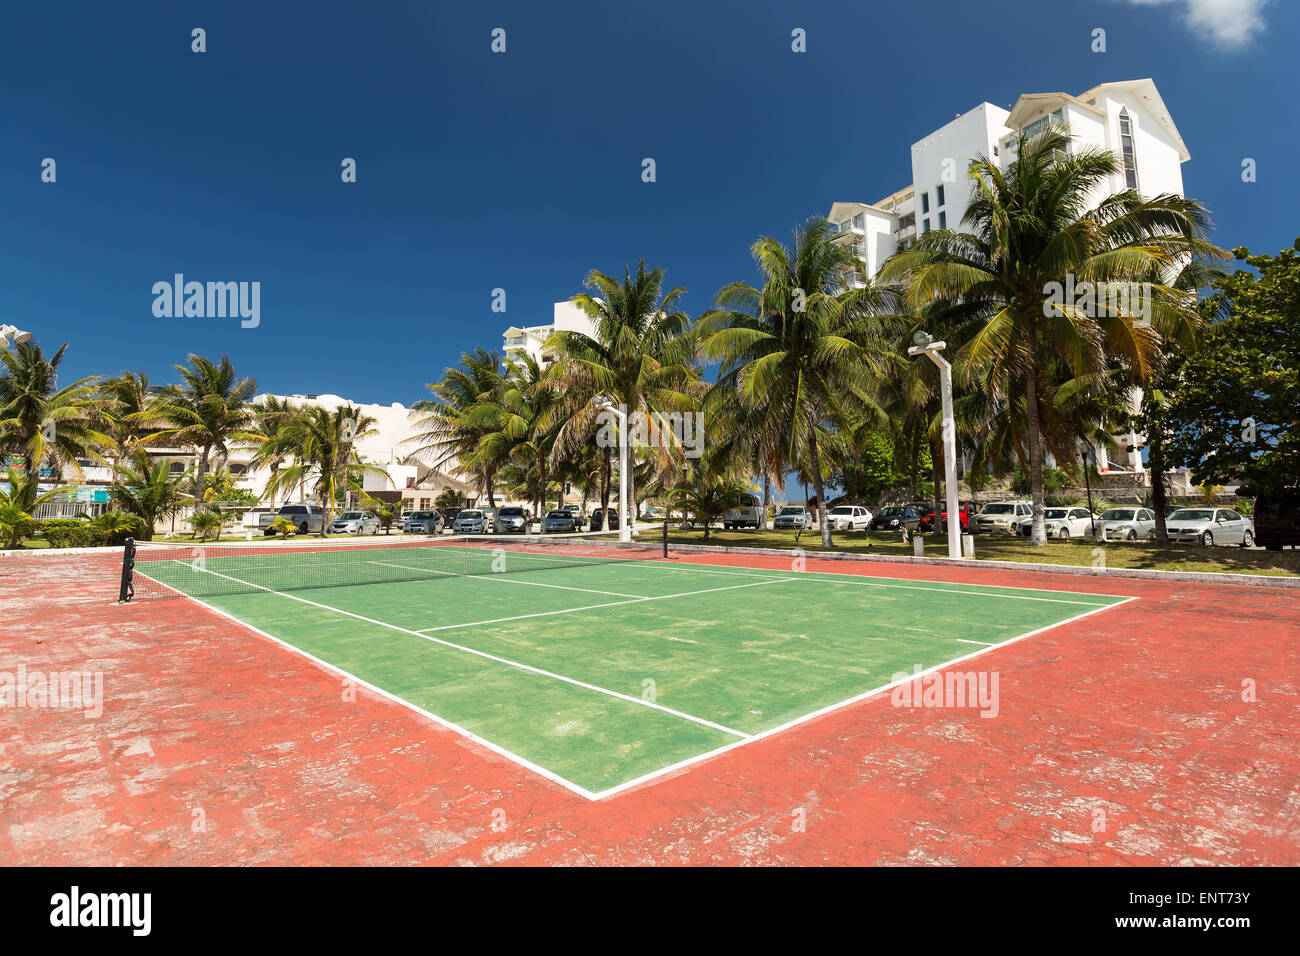 Piscine en plein air tennis vide Banque D'Images